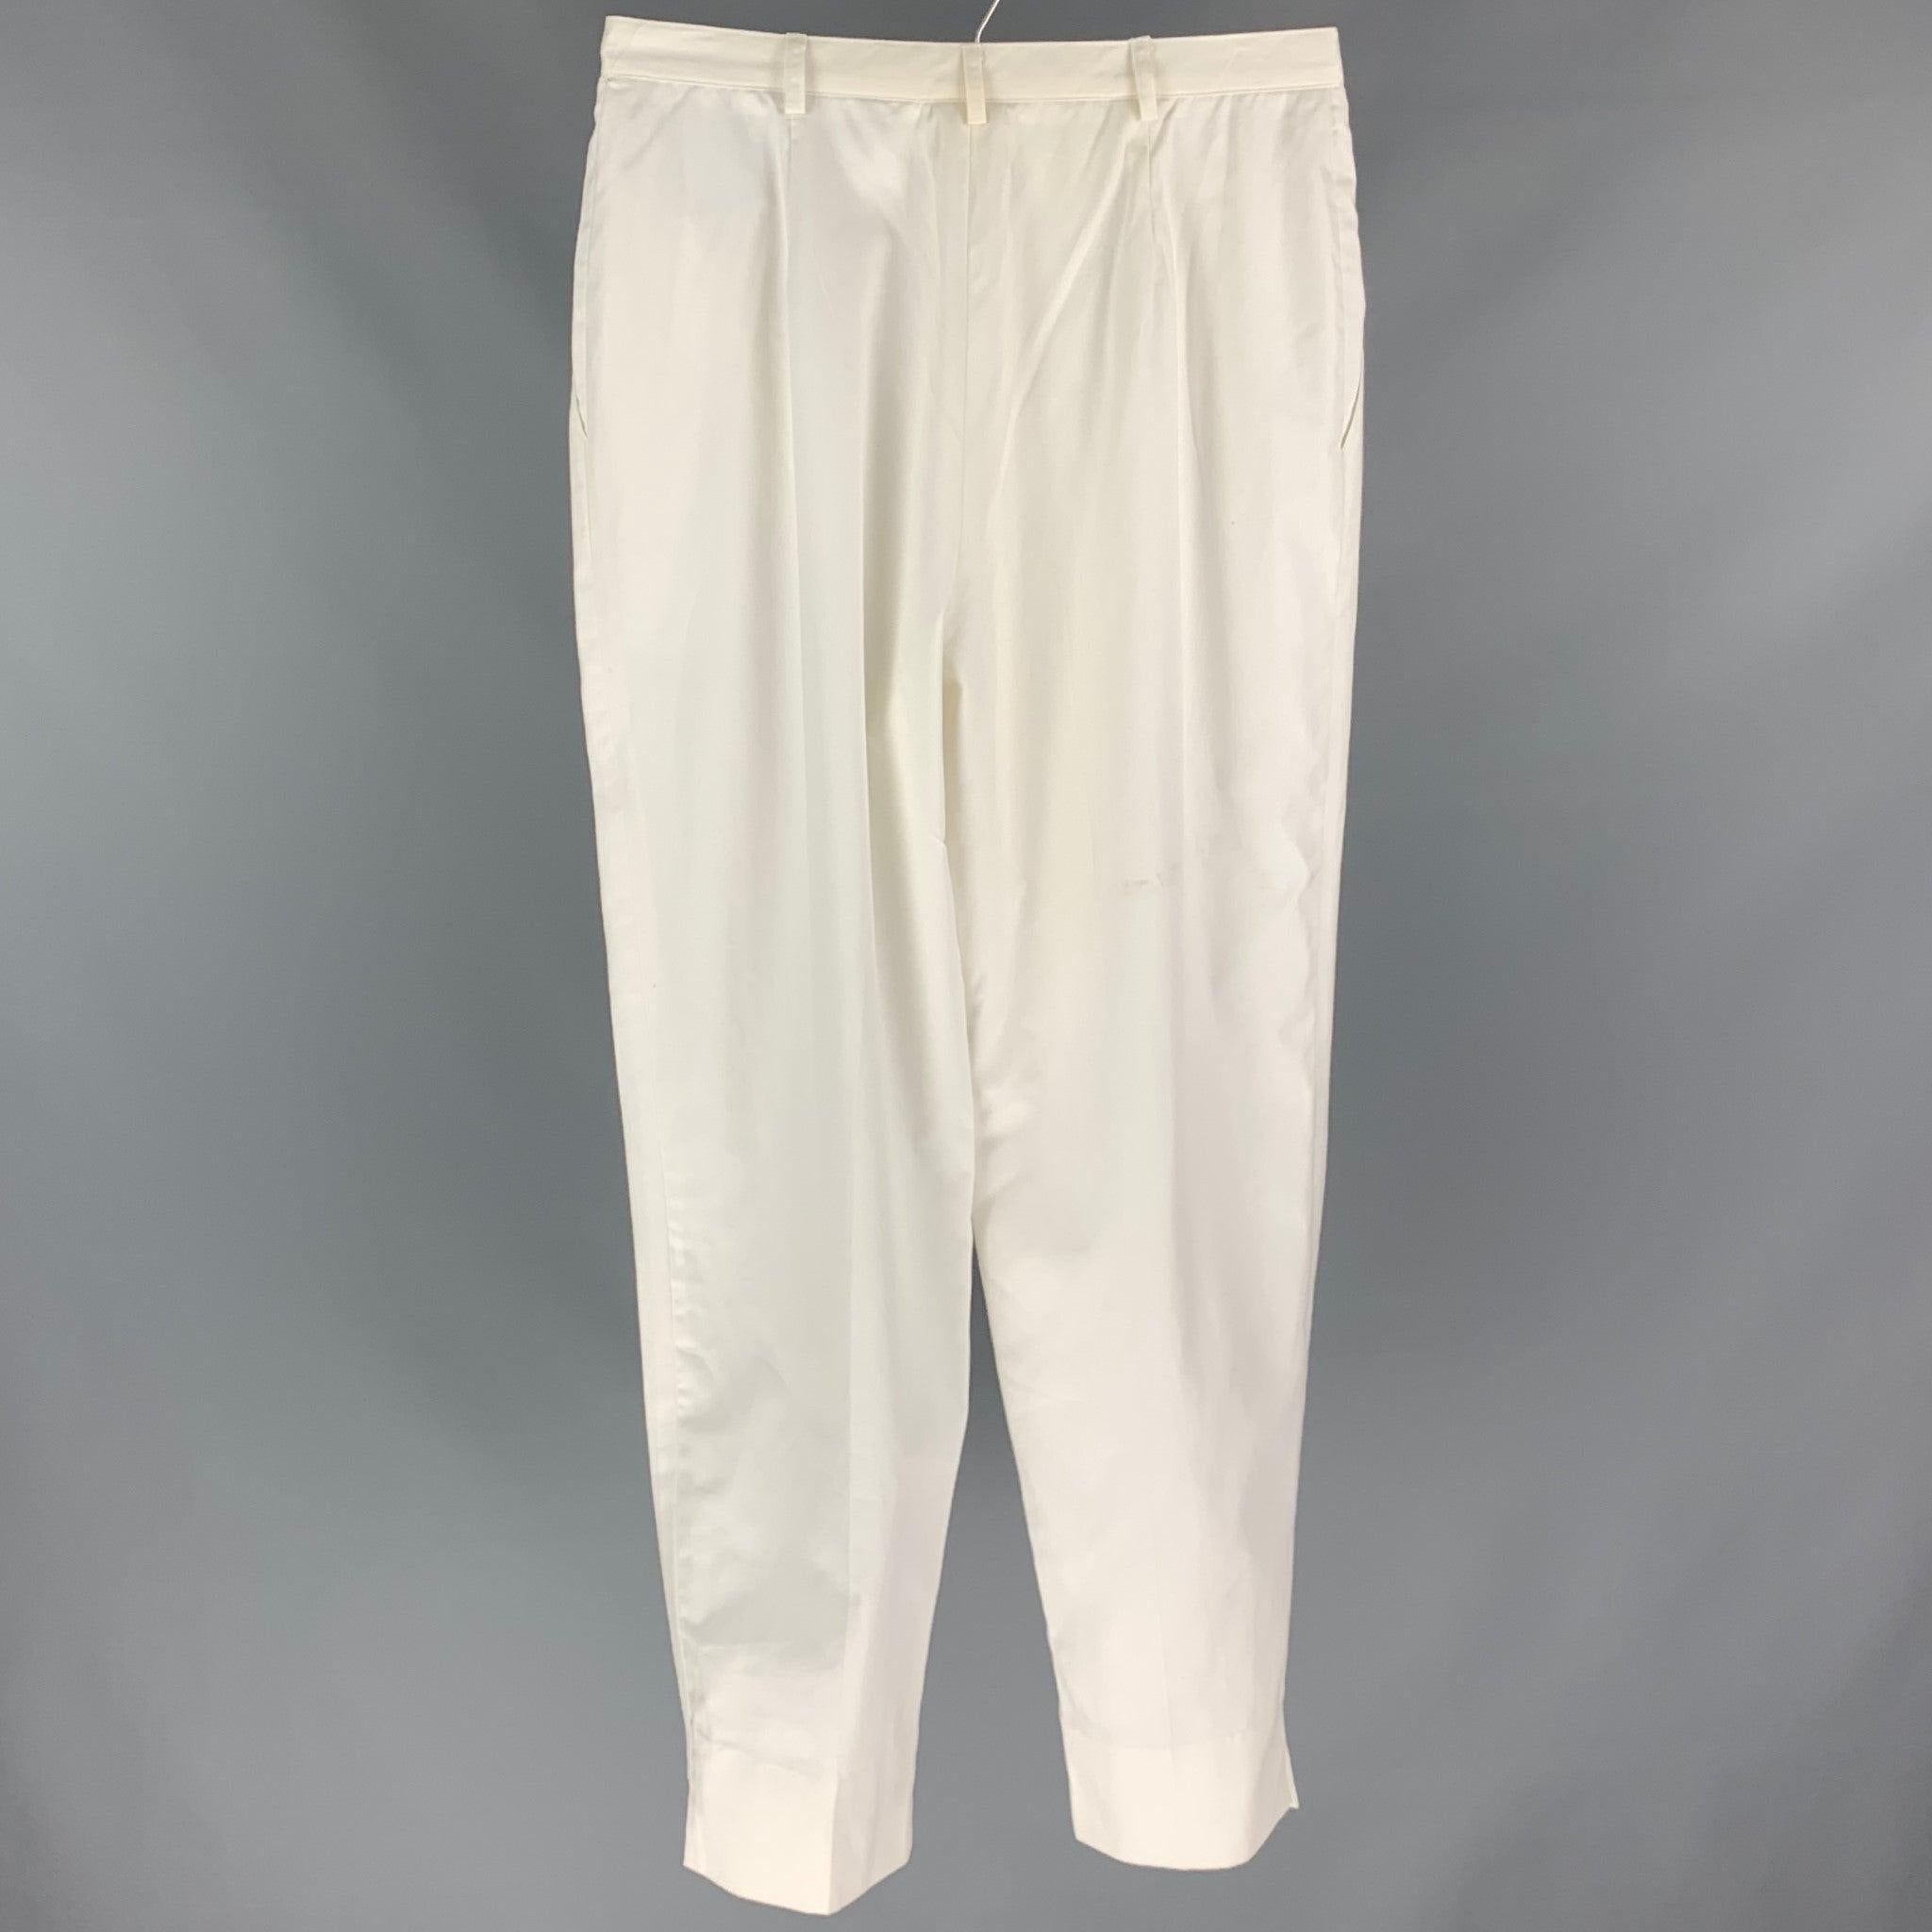 Le pantalon habillé CHRISTIAN DIOR se compose d'une matière blanche, d'une taille haute, d'une jambe large, de plis et d'une fermeture à glissière. Fabriqué aux États-Unis.
Etat d'occasion. 

Marqué :   14 

Mesures : 
  Taille : 31 pouces  Taille :